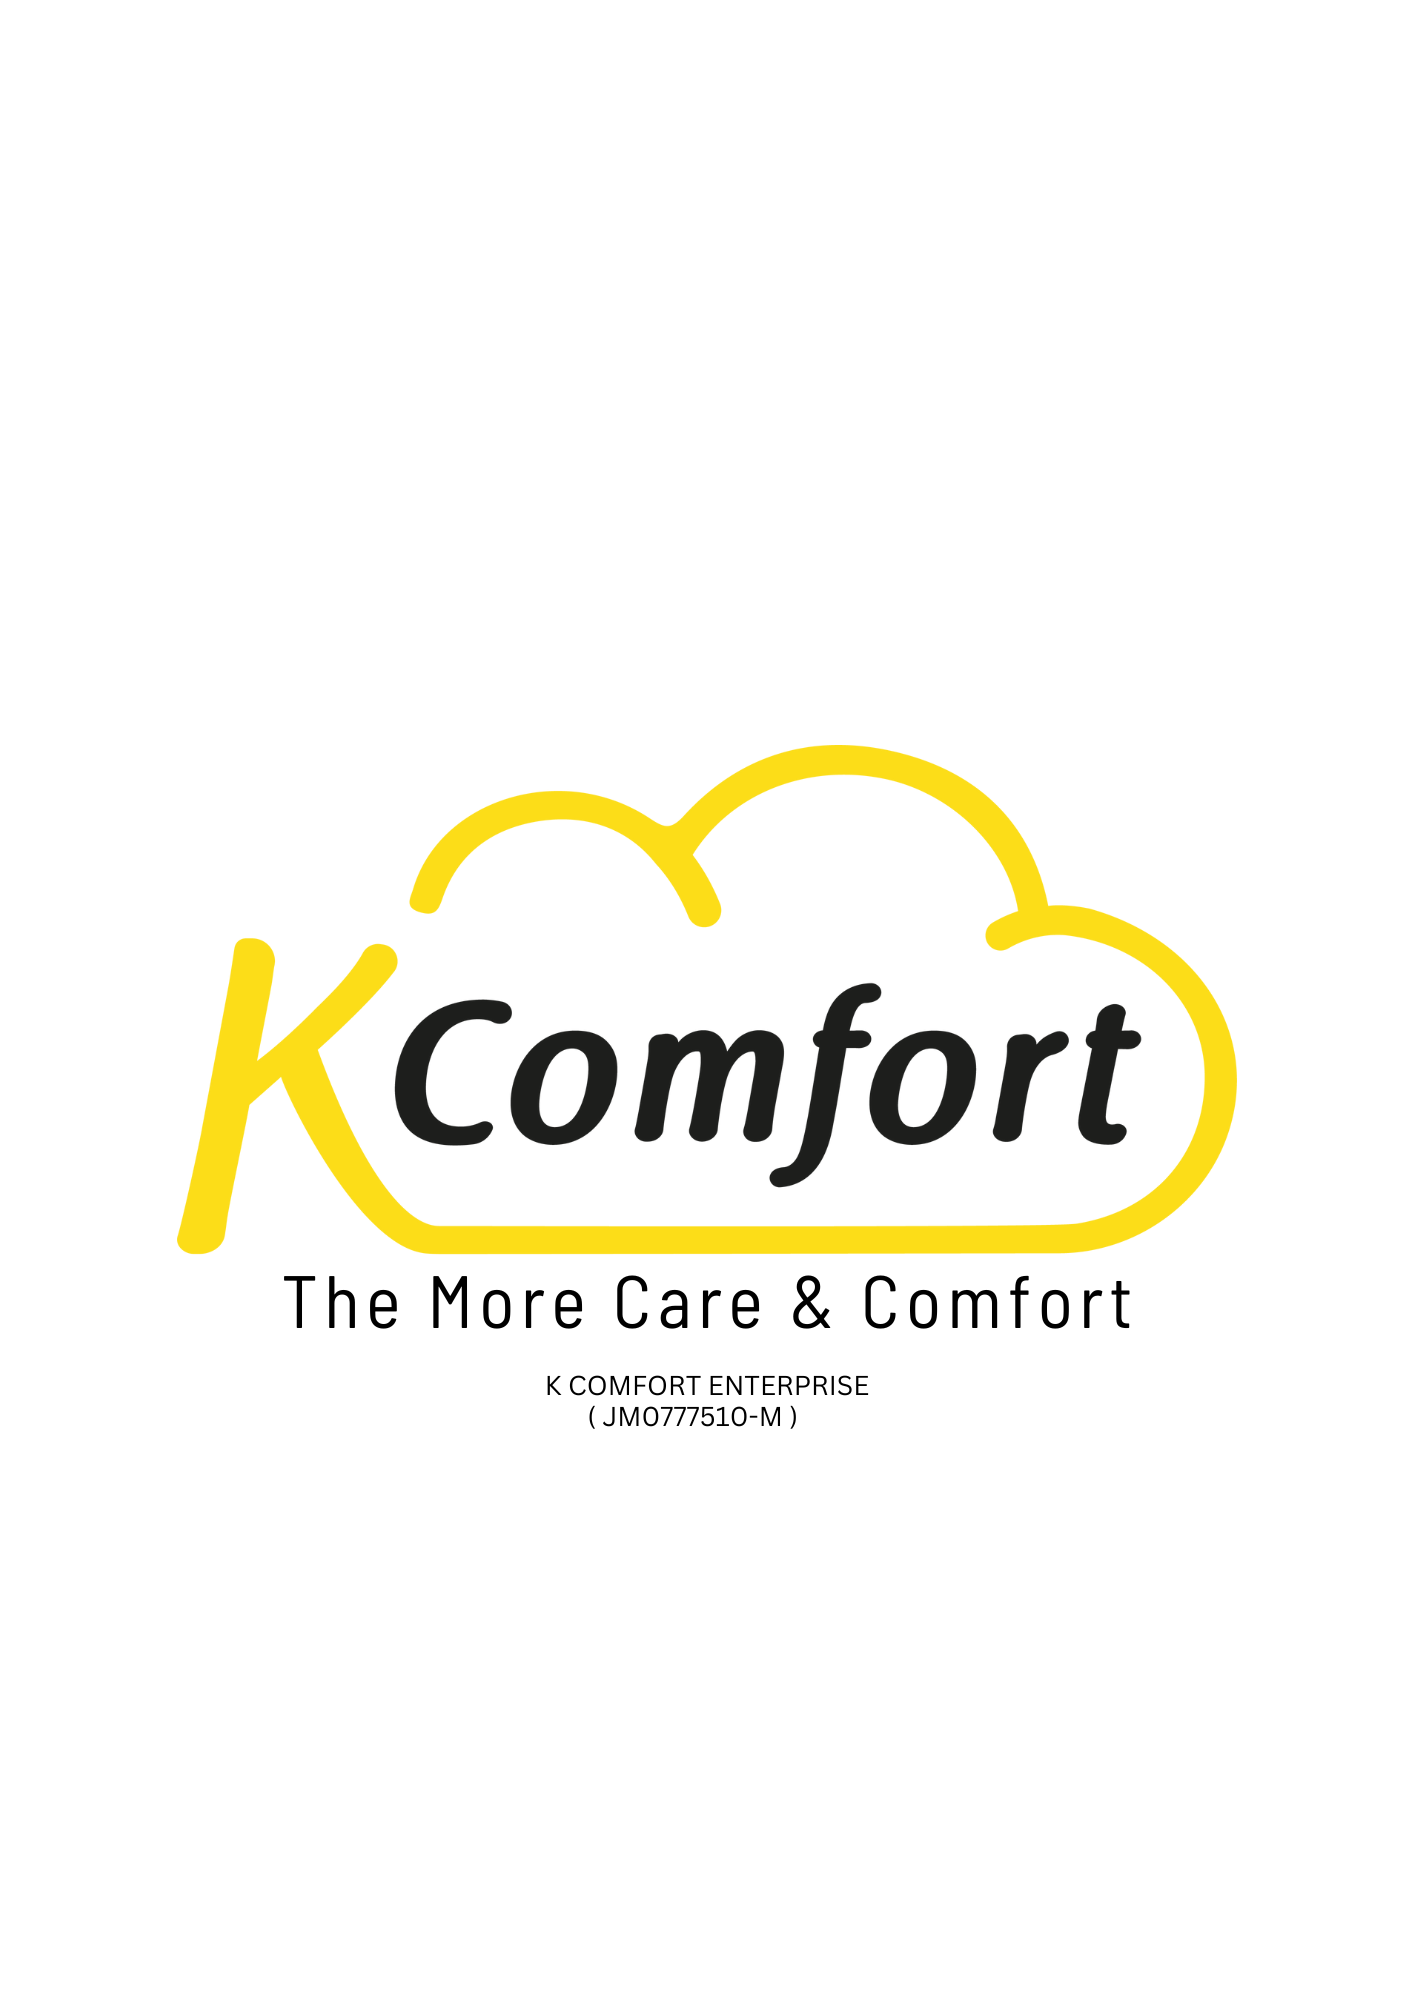 K Comfort